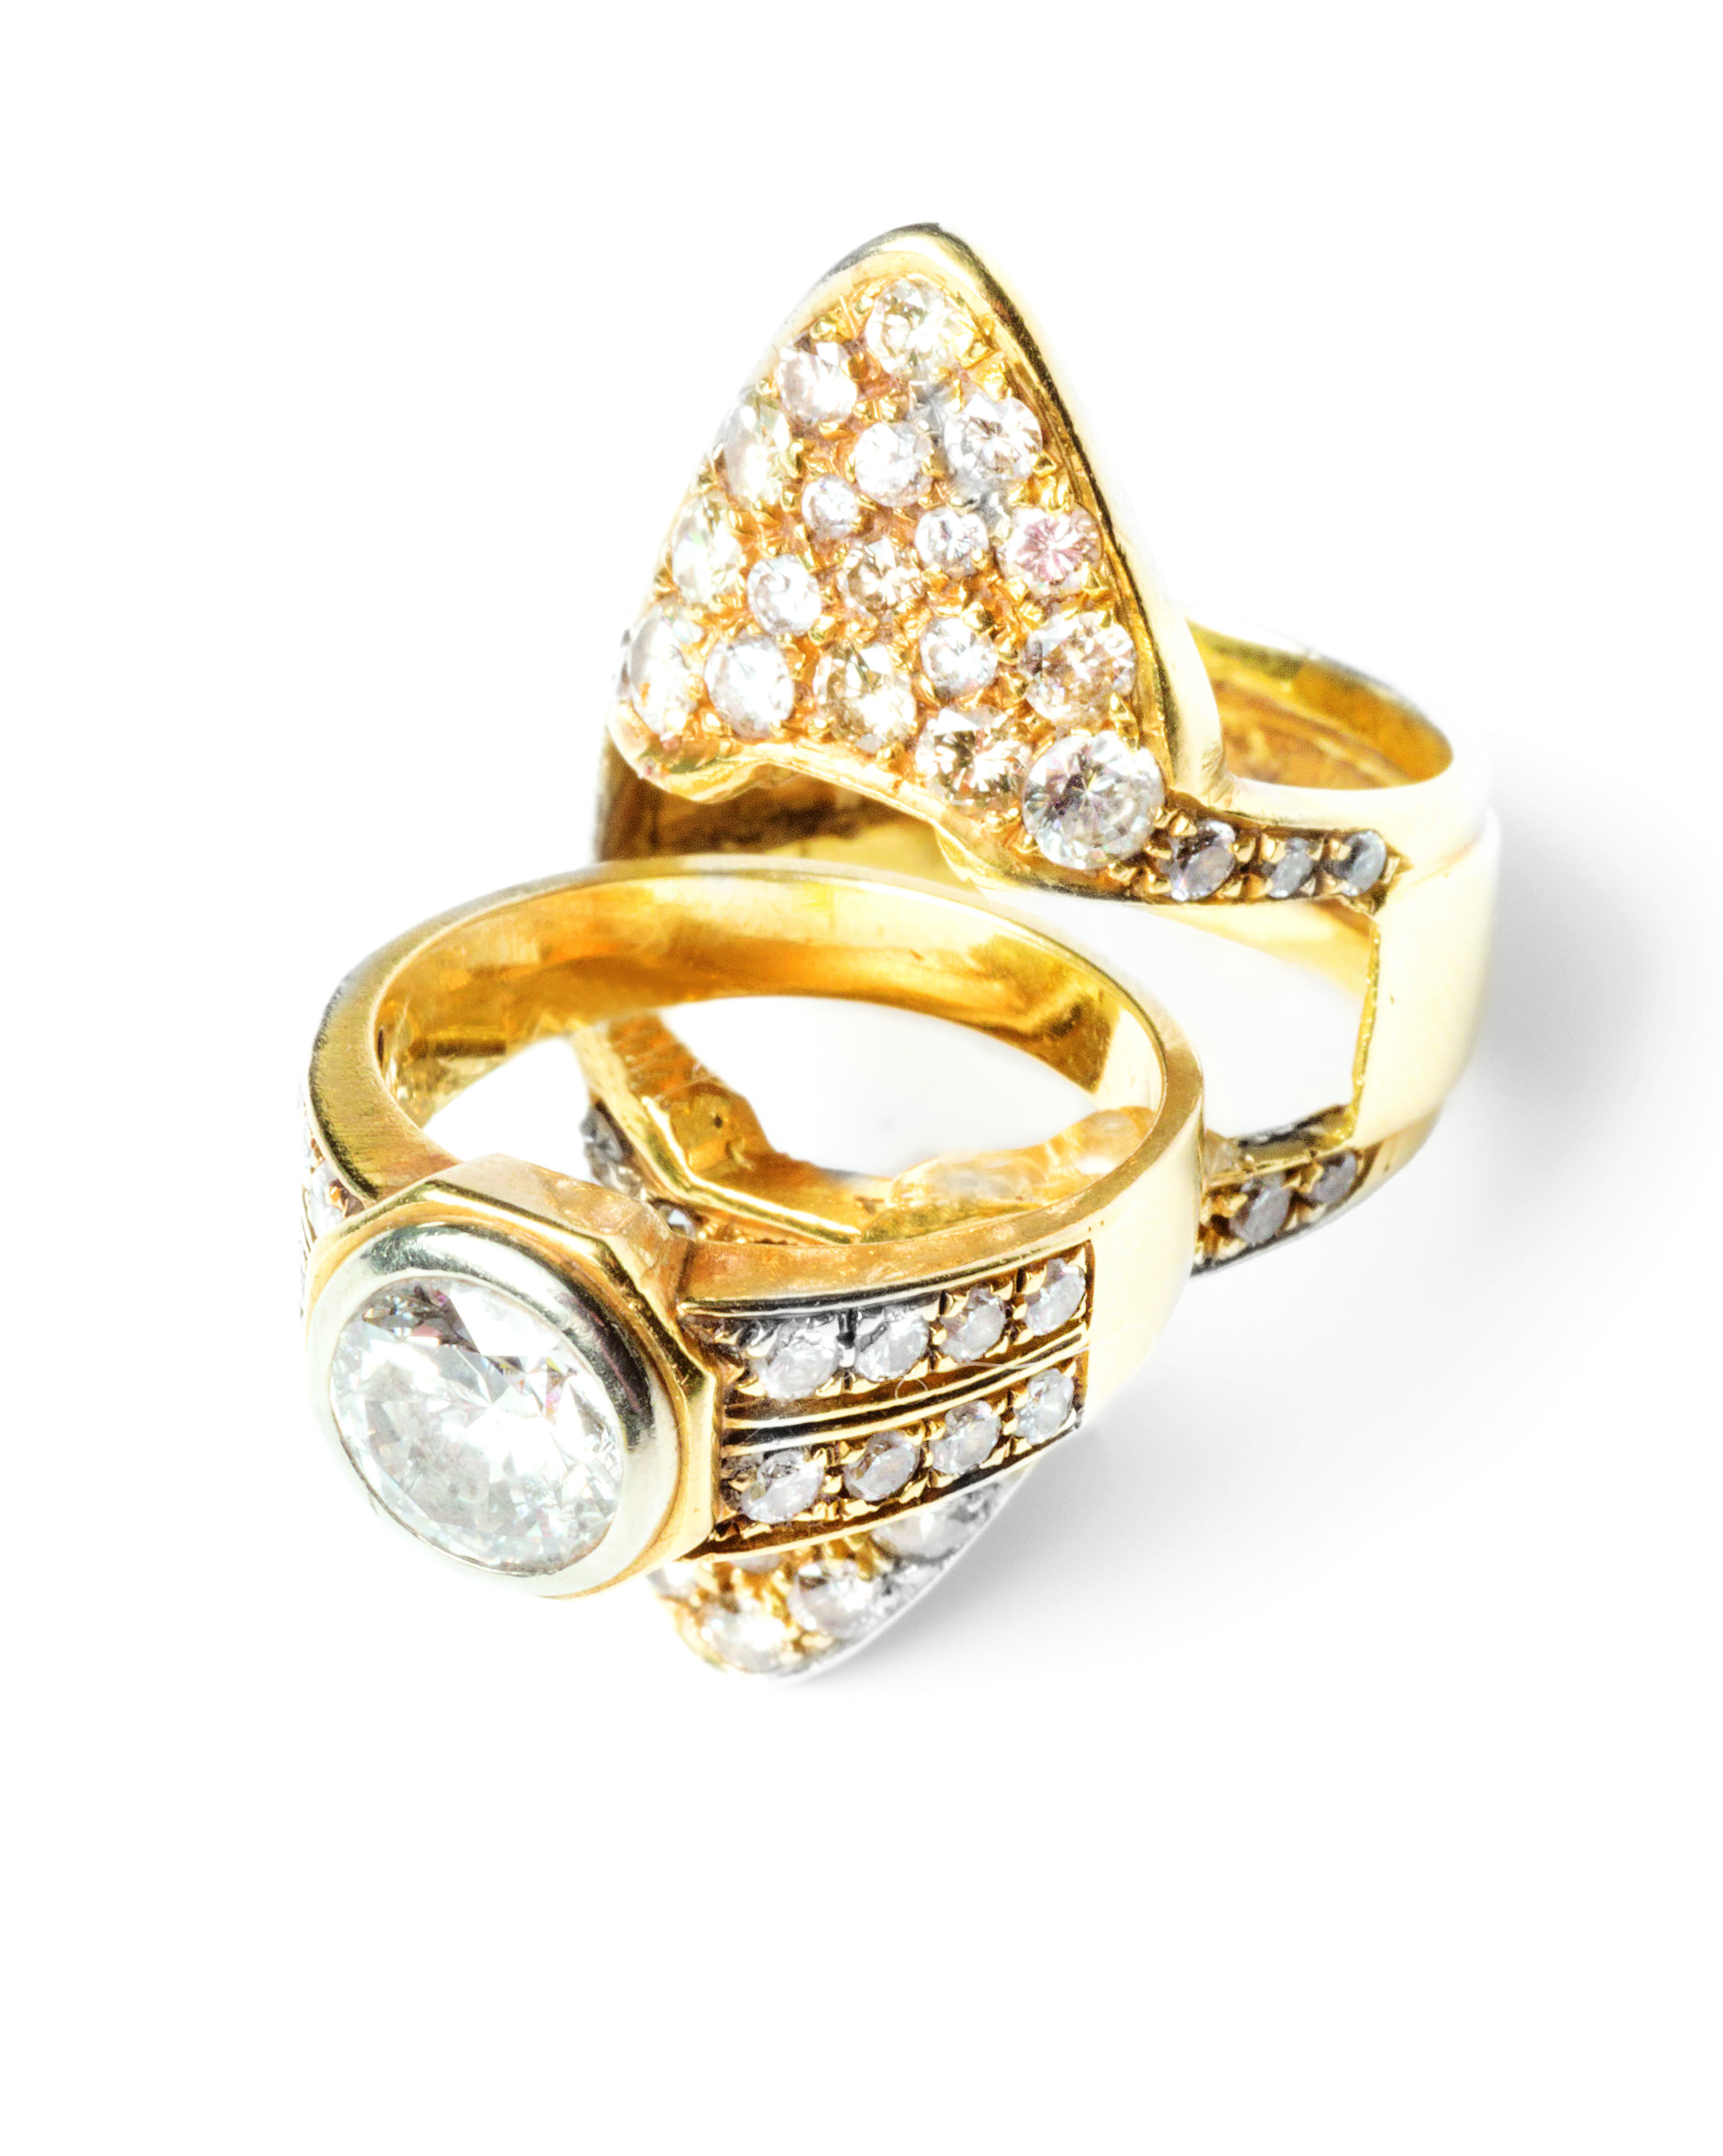 Anello scomponibile in oro giallo e oro bianco 18 ct con diamante centrale taglio brillante